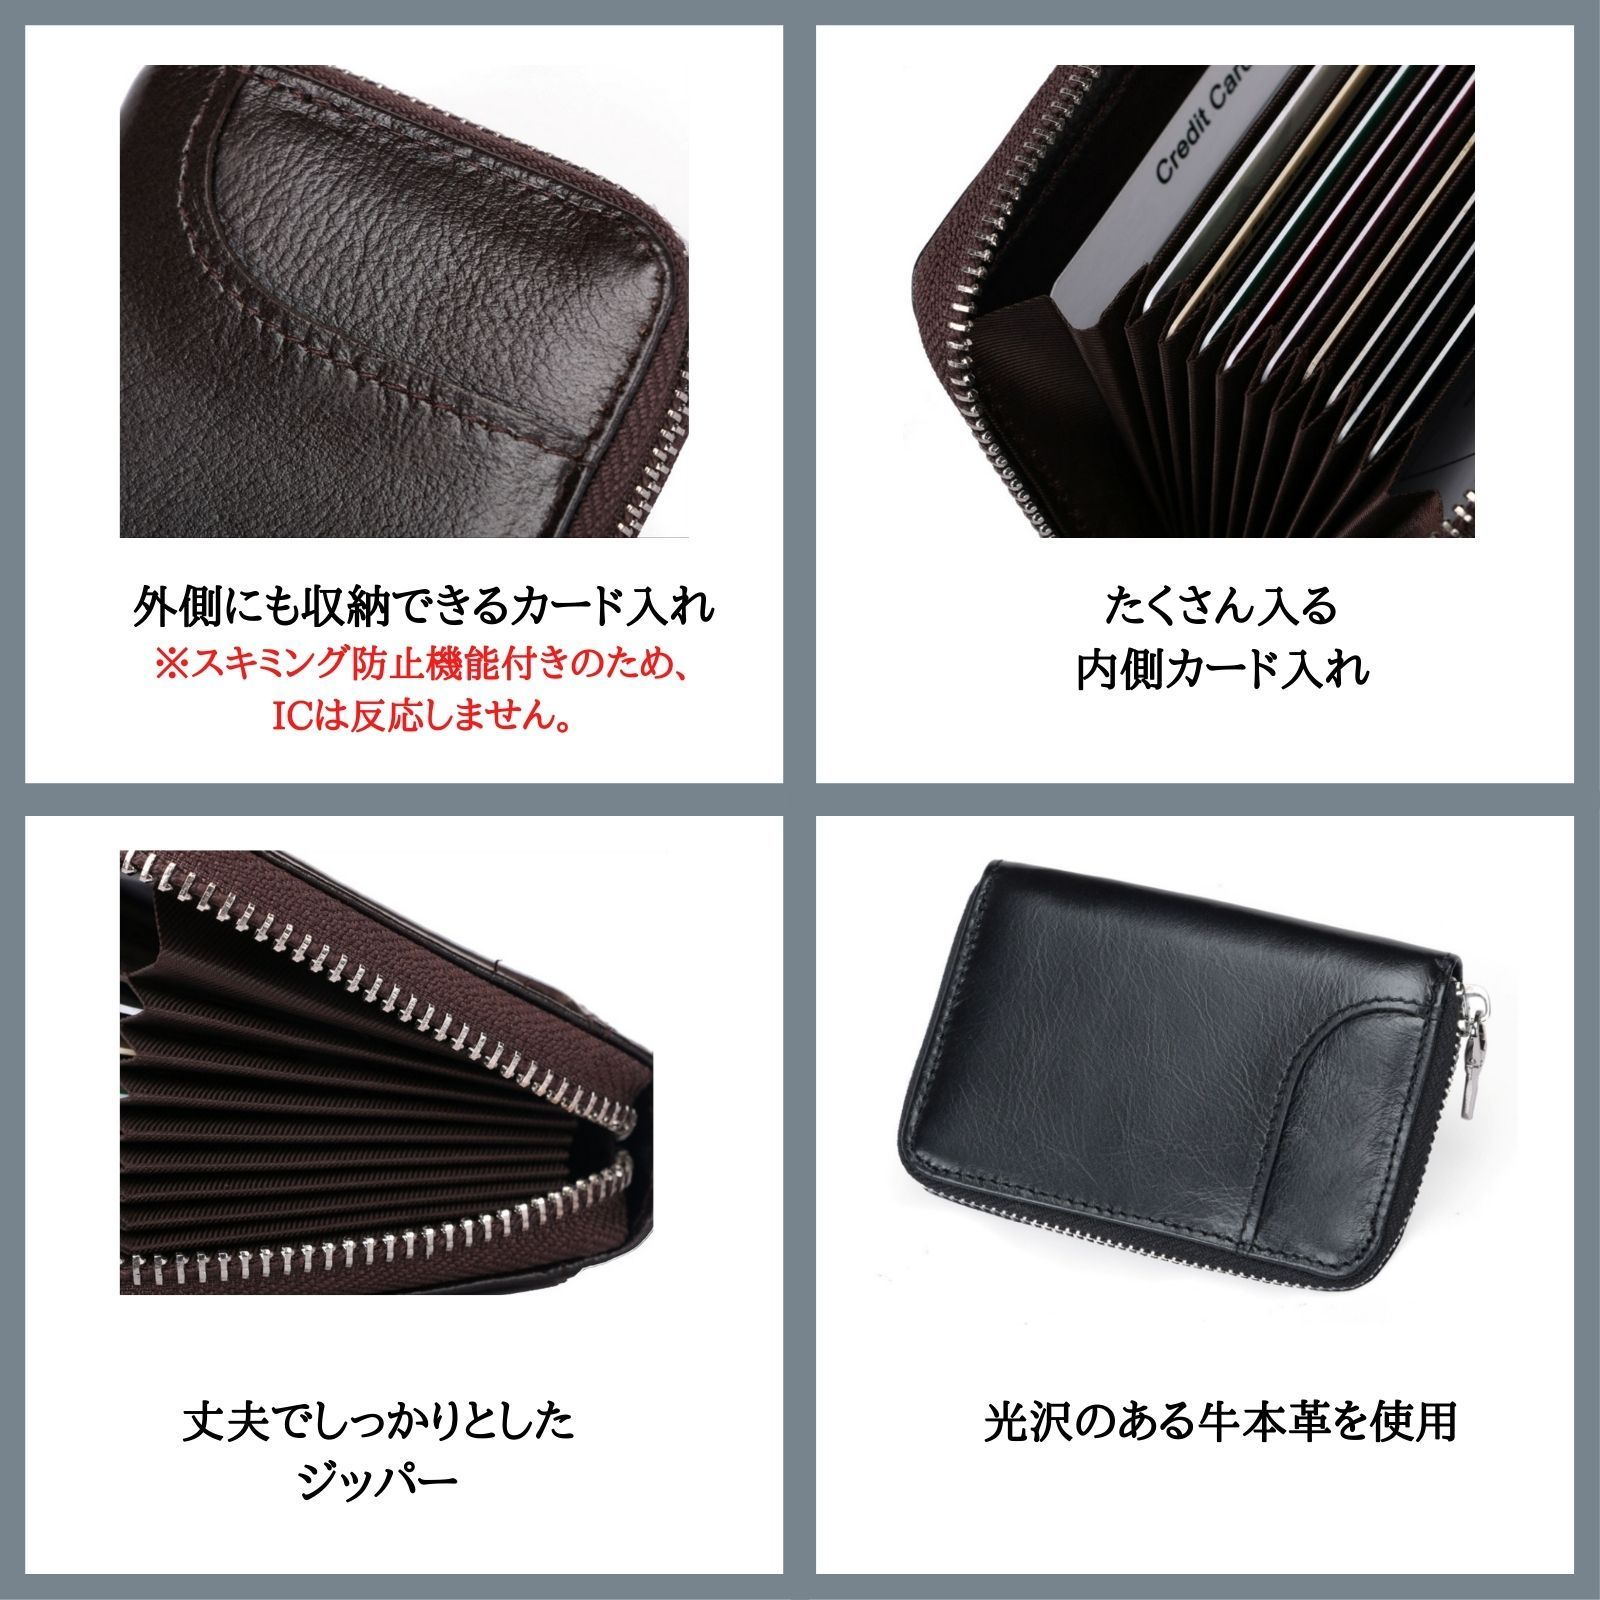 JAPAN KEYSTONE カードケース メンズ 11個仕切り 大容量 3種のカラー カード入れ じゃばらタイプ カードケース レディース